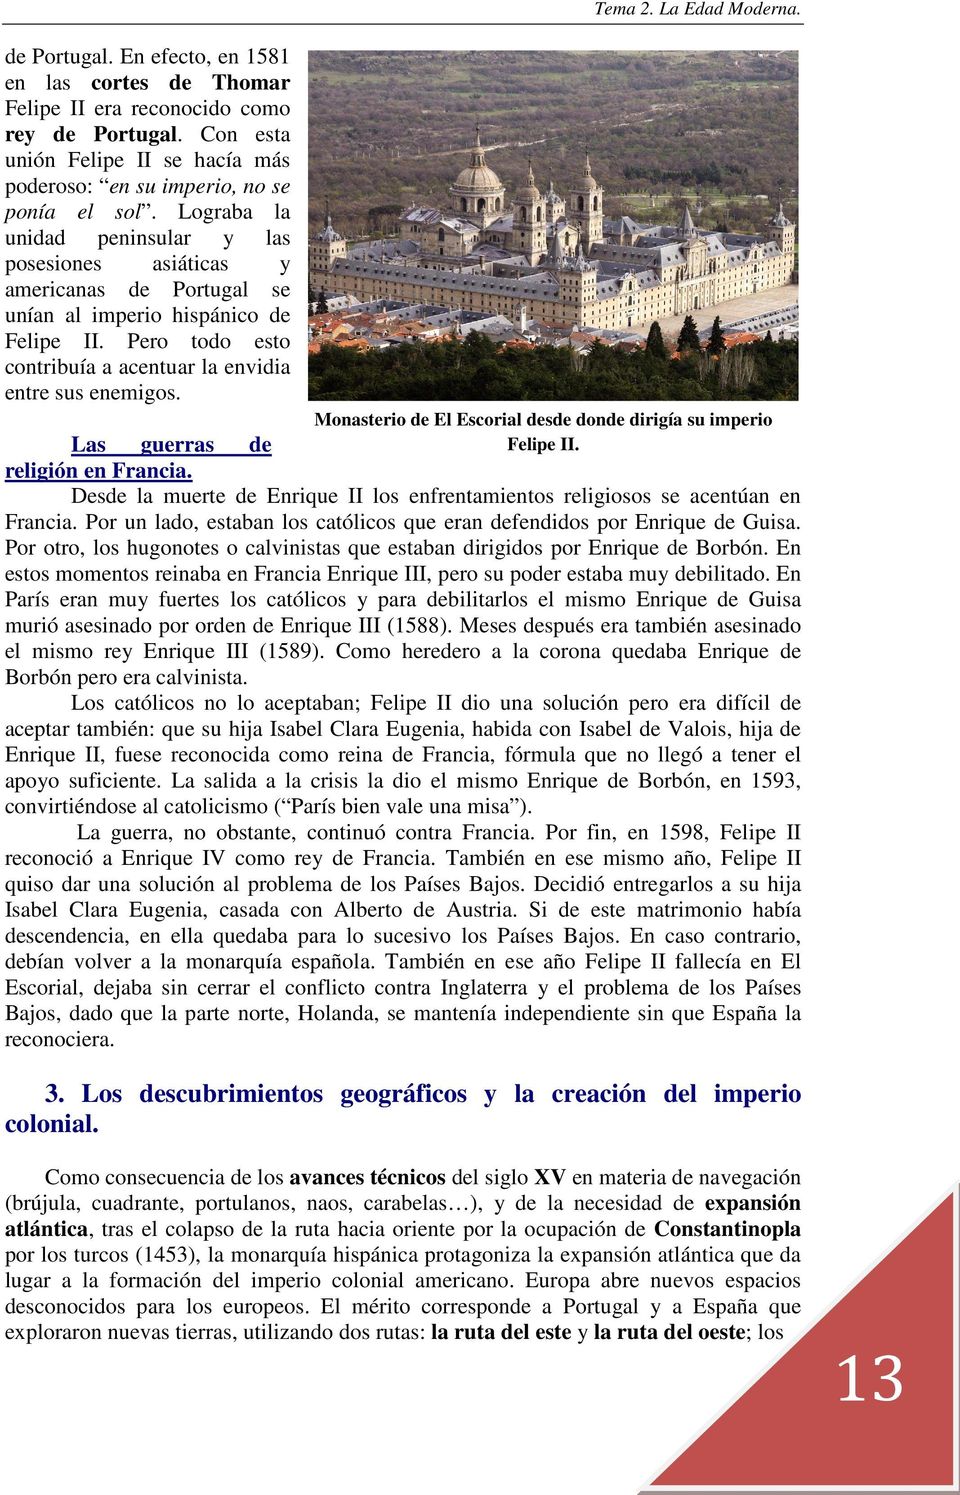 Las guerras de religión en Francia. Tema 2. La Edad Moderna. Monasterio de El Escorial desde donde dirigía su imperio Felipe II.